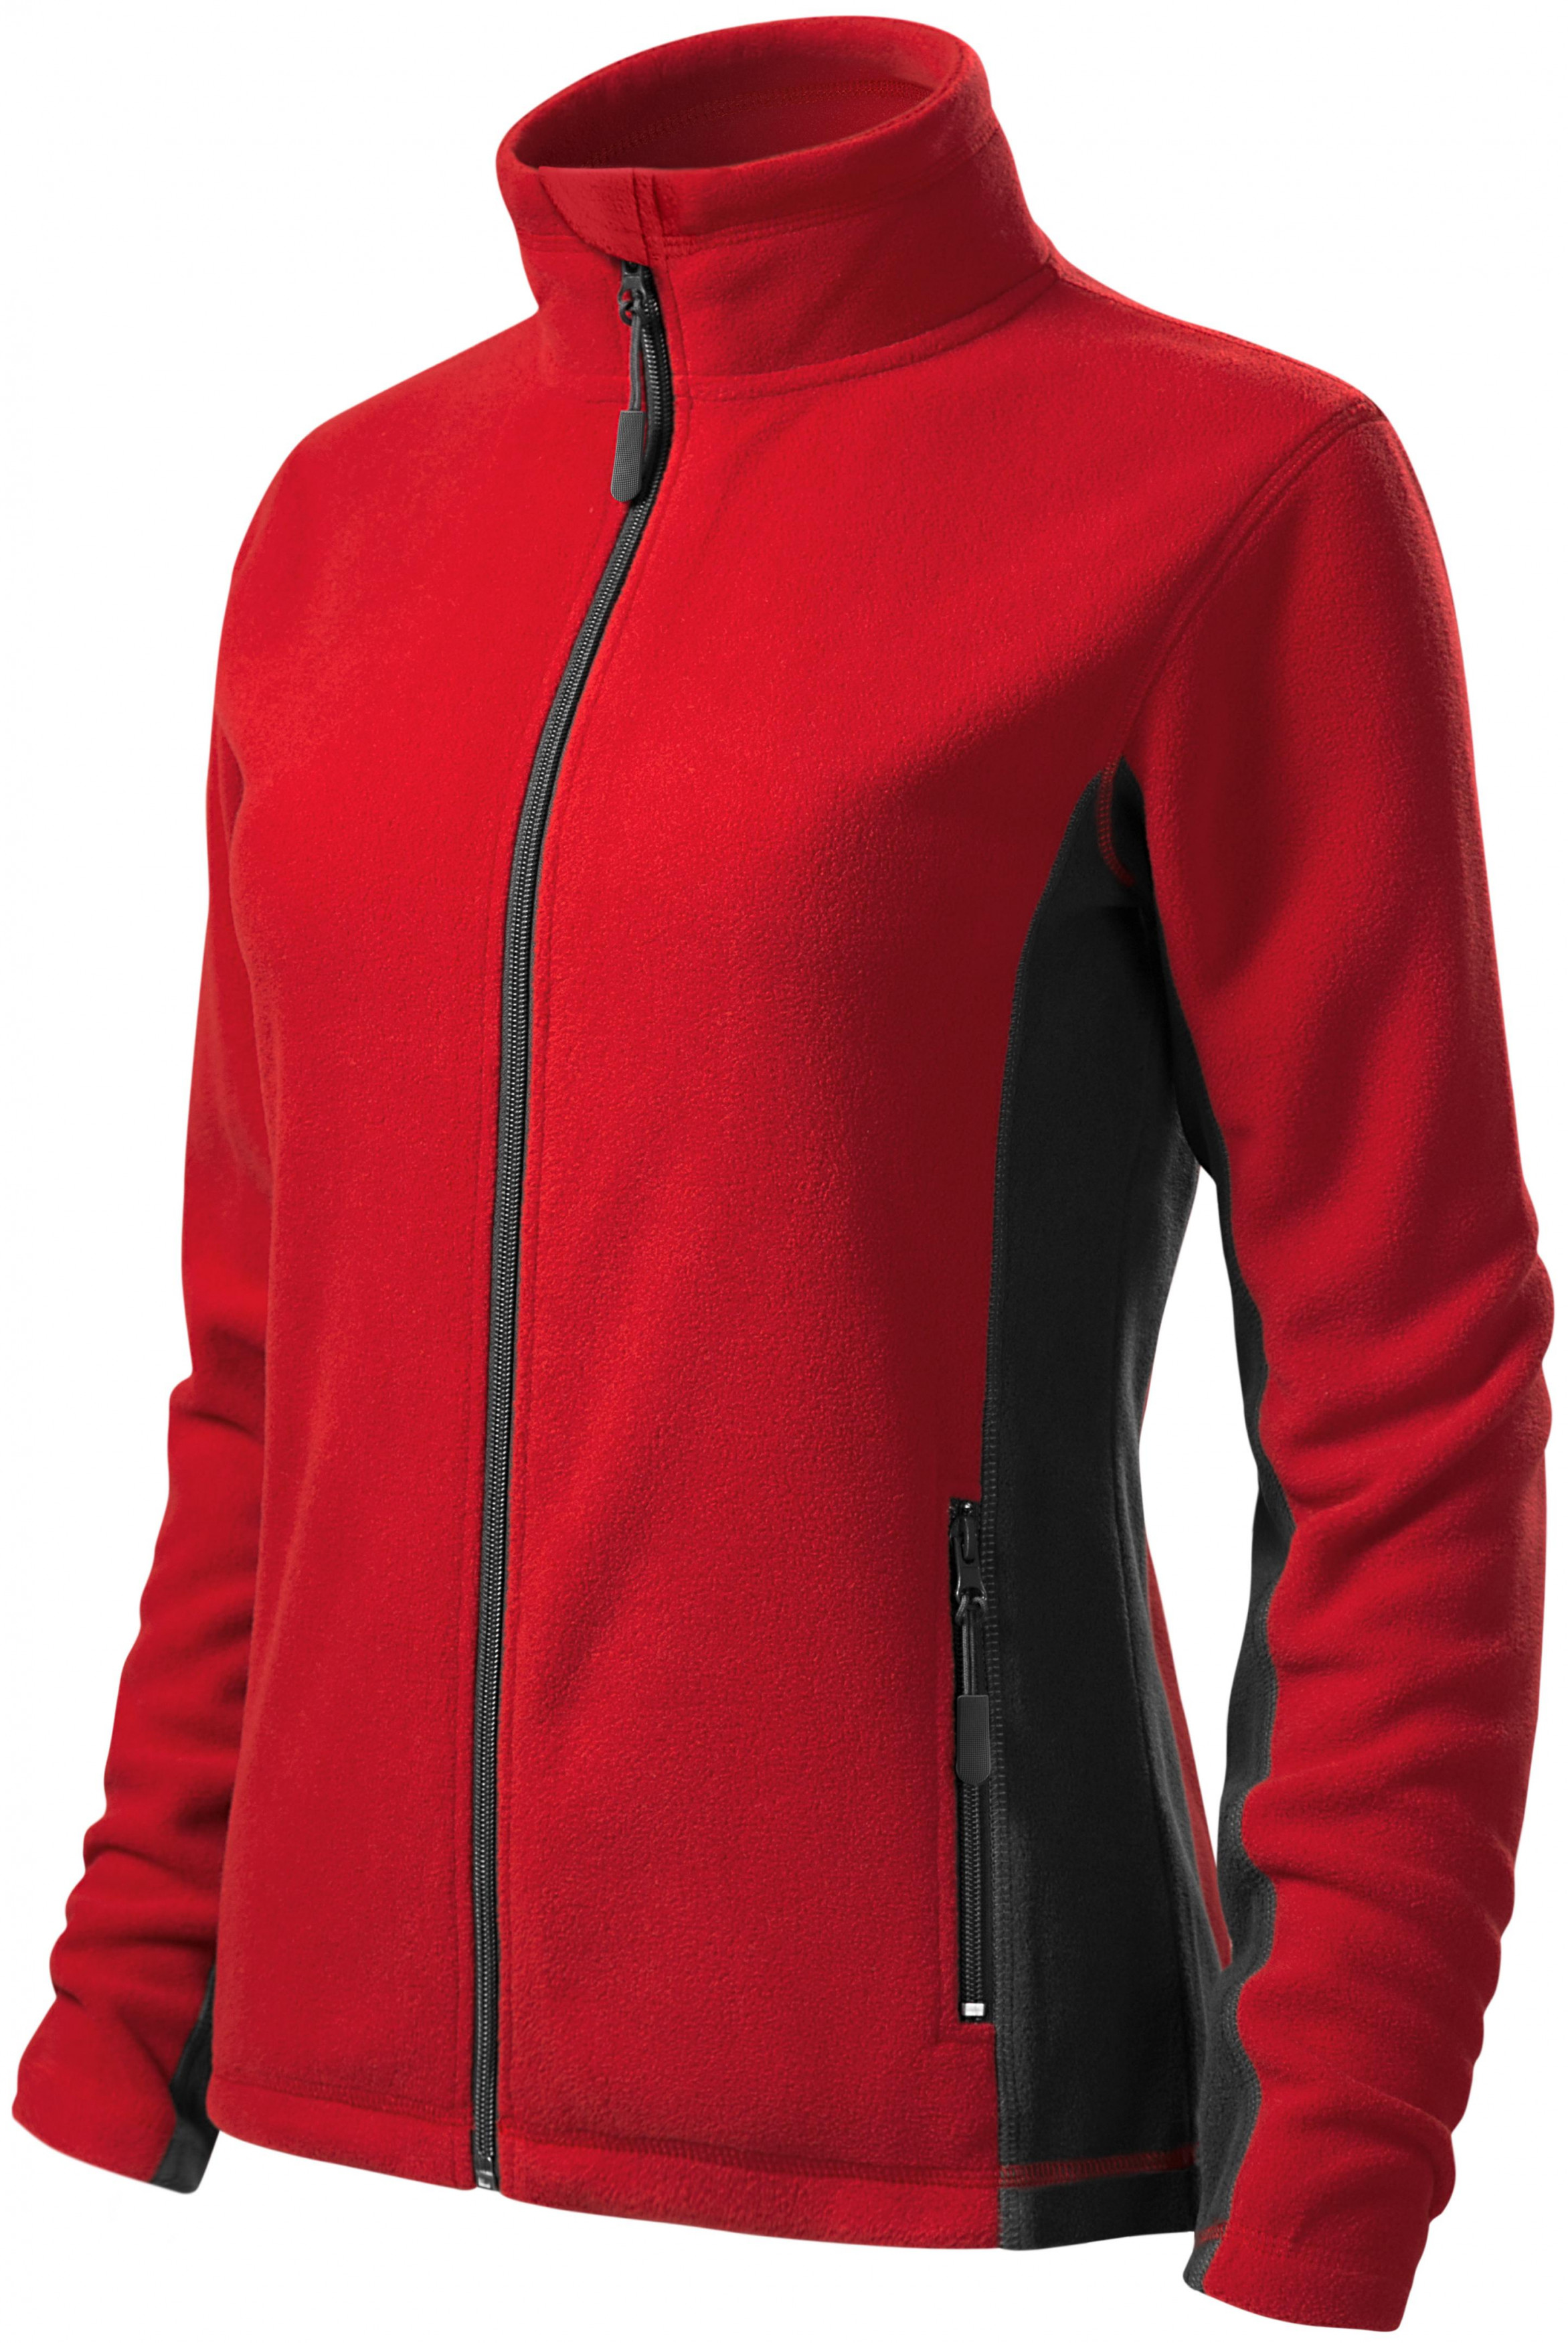 Dámska fleecová bunda kontrastná, červená, L